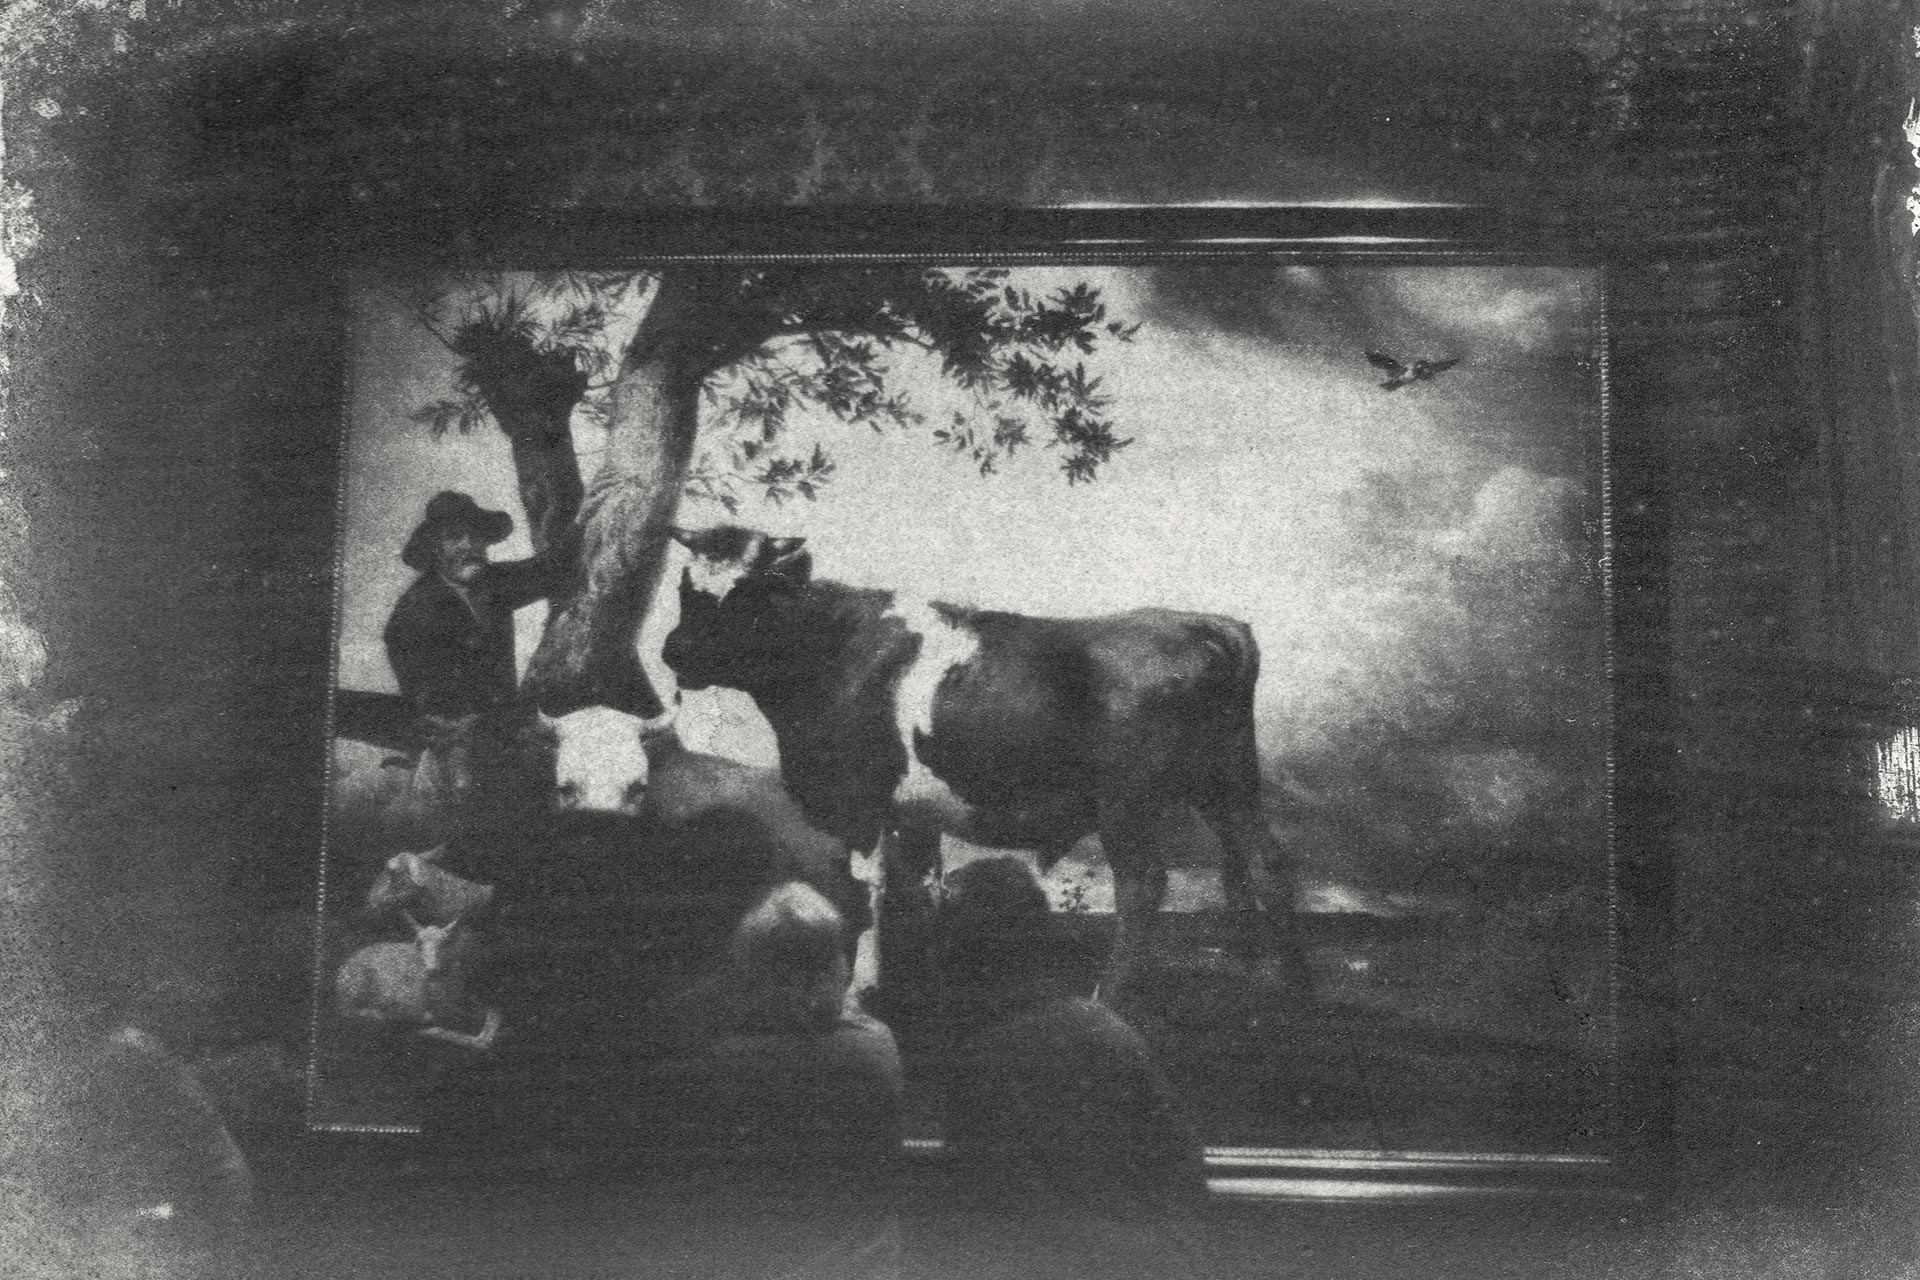 Abbildung eines Gummidruckes von Marcel van Eeden, das einen Ausstellungsraum im Mauritshuis in Den Haag zeigt, in dem zwei Menschen vor einem großen Gemälde stehen und es betrachten. Auf dem Gemälde sind mehrere Kühe, Schafe und ein Mann zu erkennen.